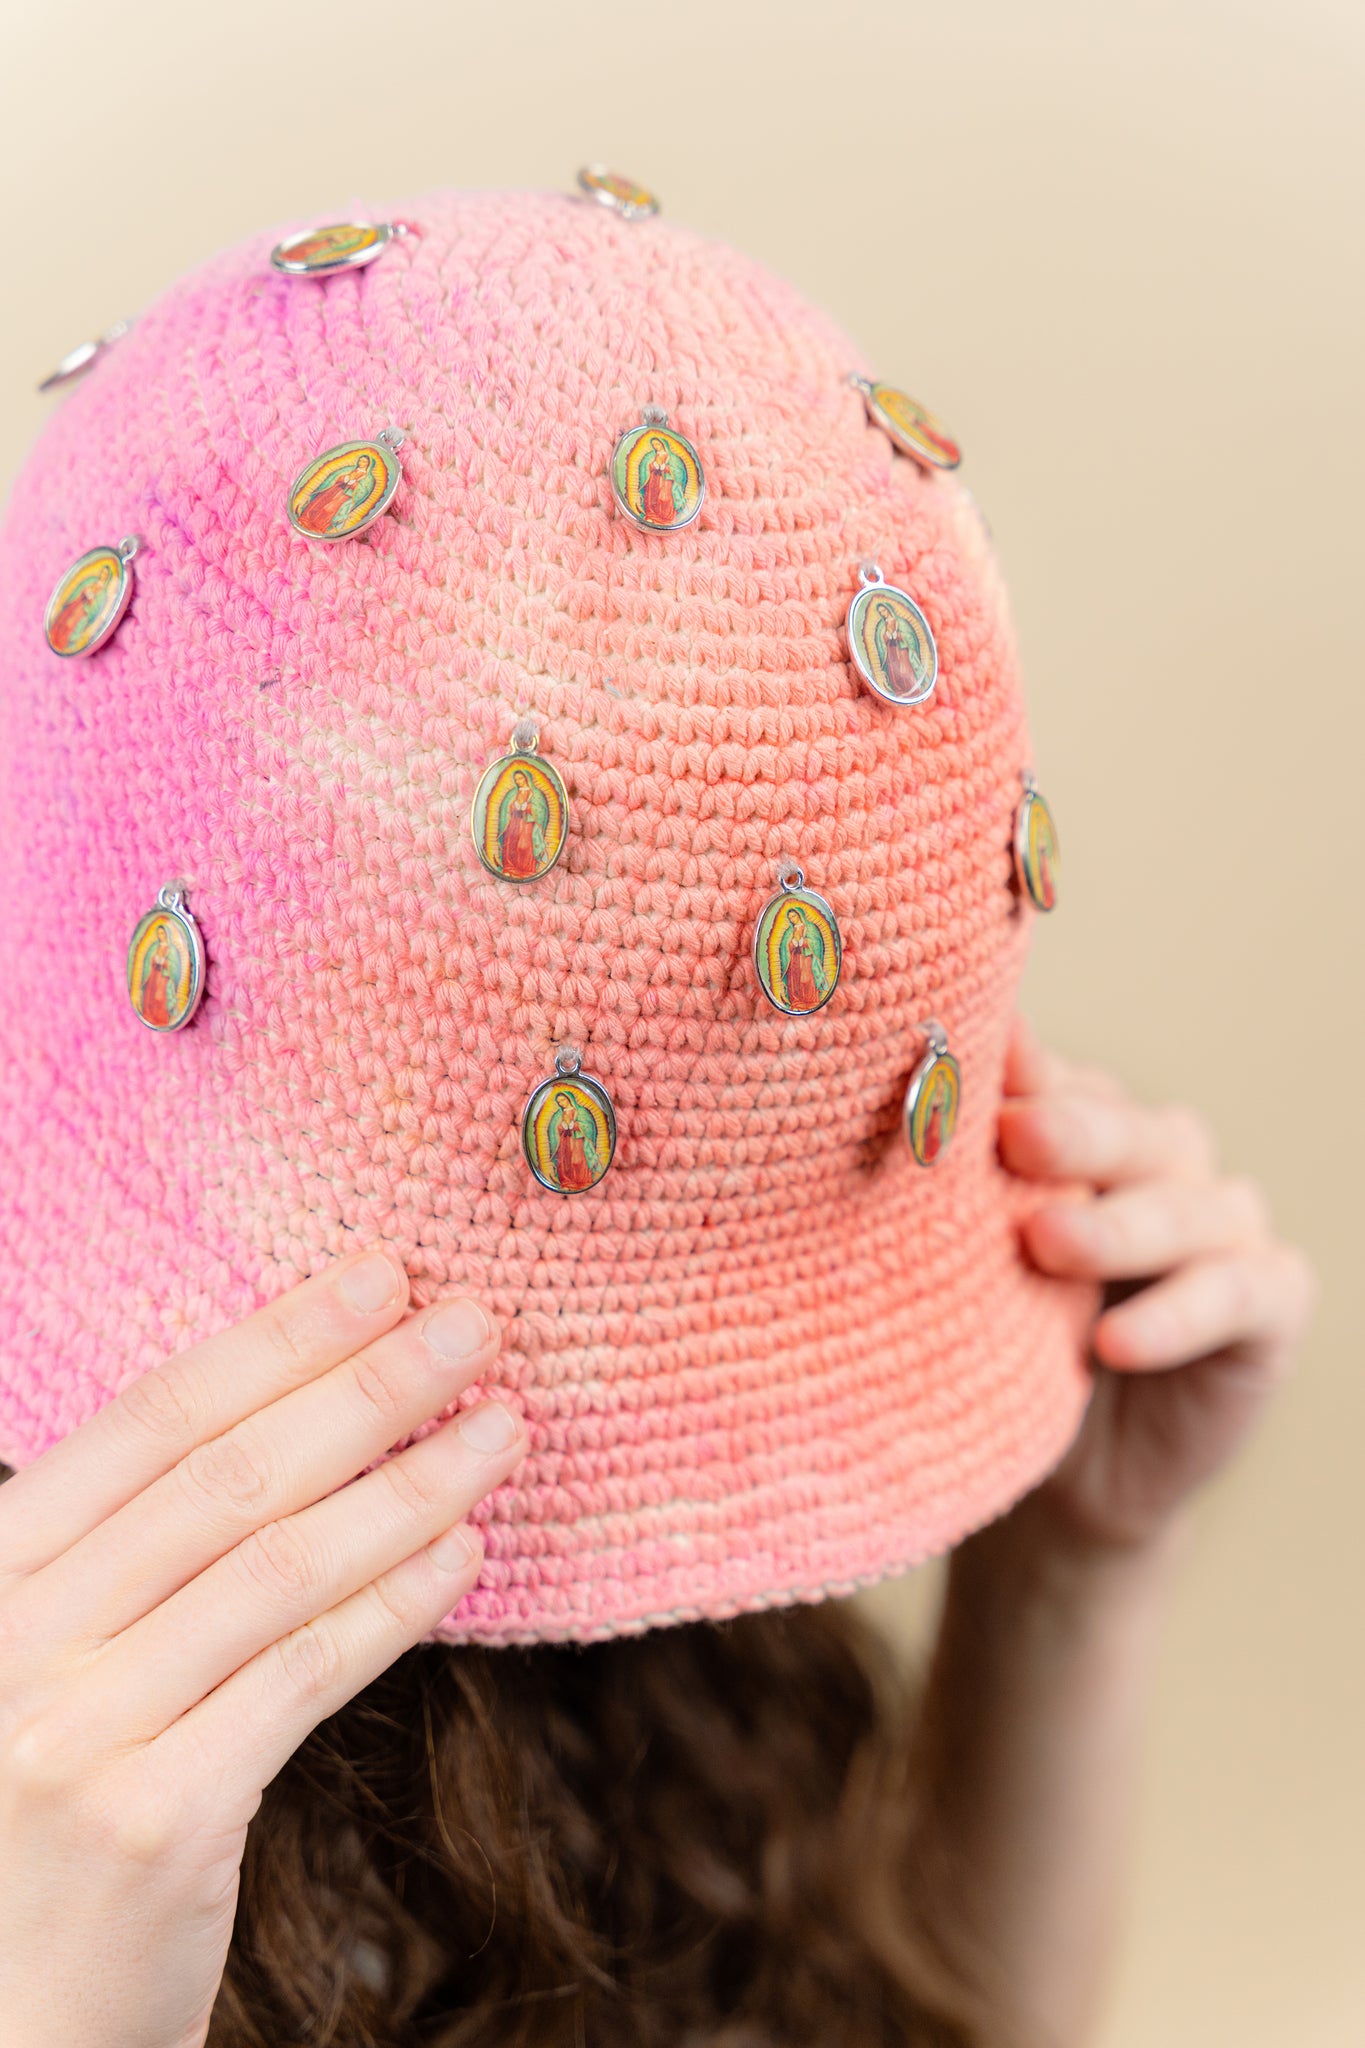 Image du bucket hat Kanil de Maison Badigo, bucket hat (bob) en cotton crocheté multicolore doublée unique et tendance